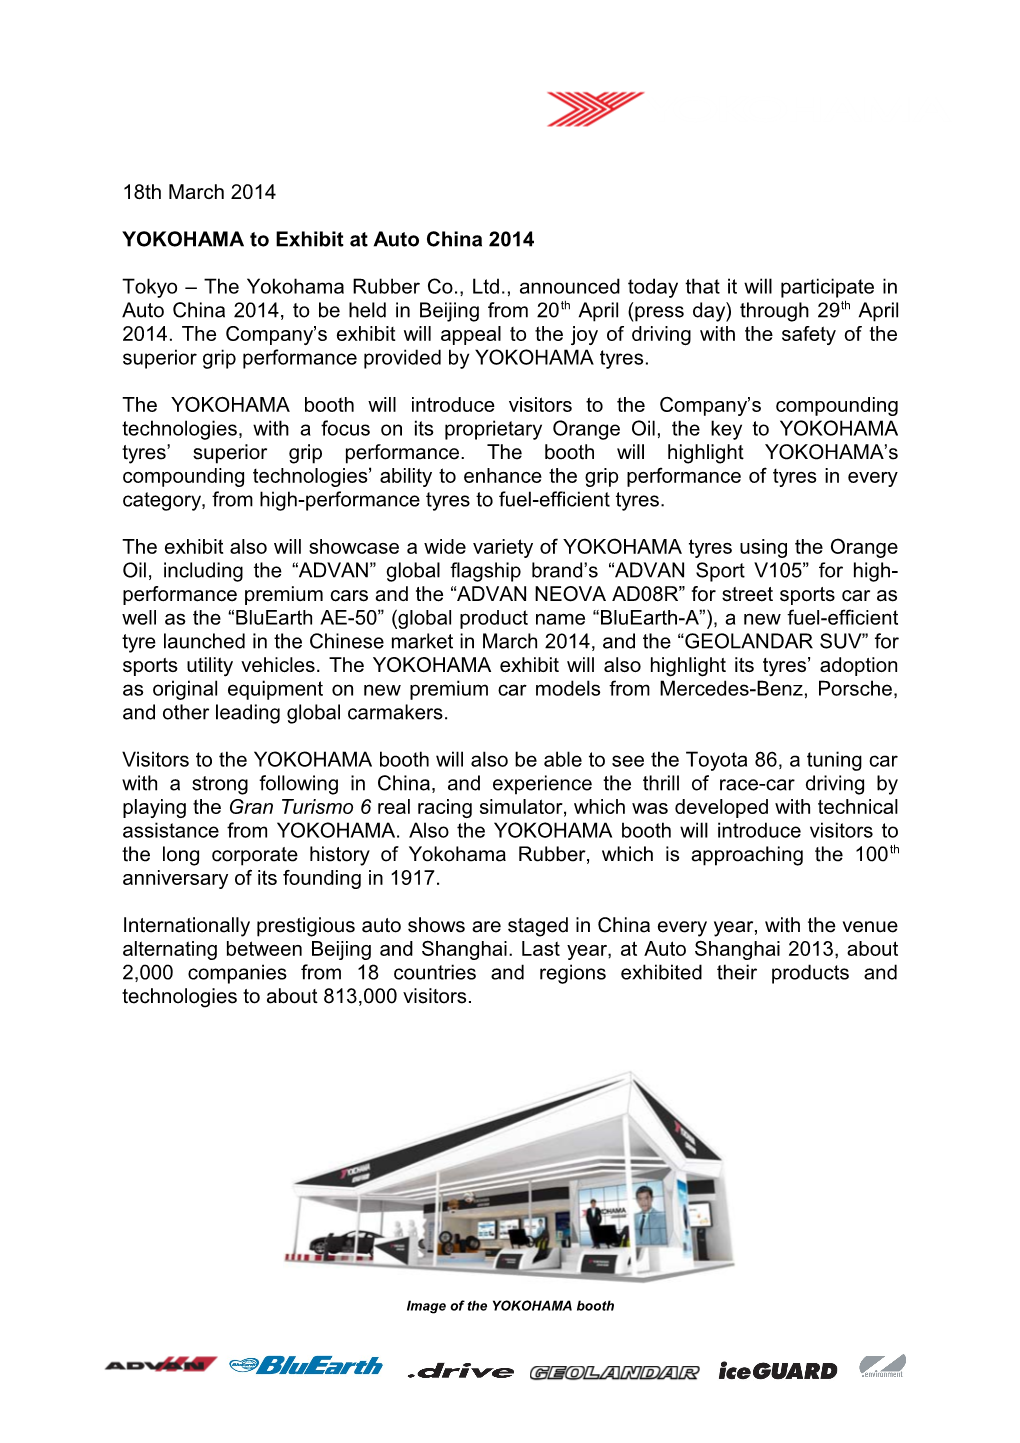 YOKOHAMA to Exhibit at Auto China 2014